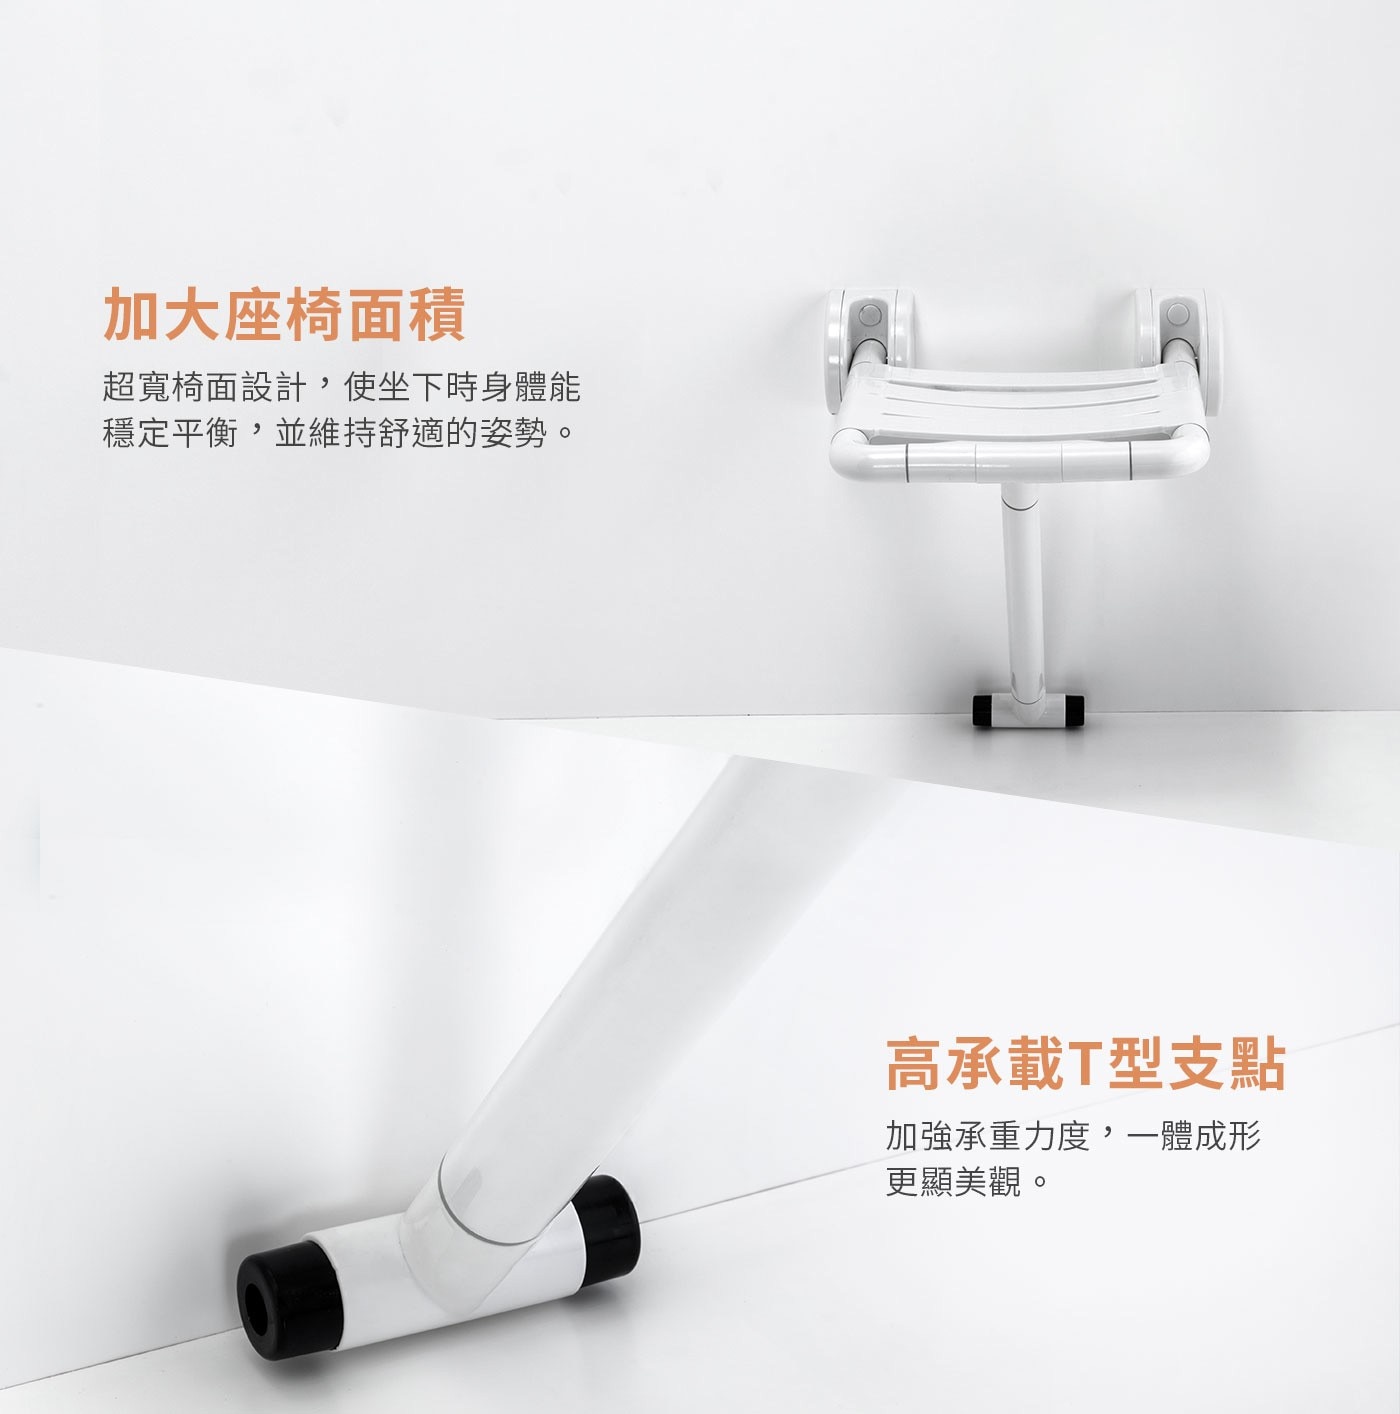 itai一太上翻淋浴座椅，浴廁安全輔具，承重300KG，台灣SGS檢驗認證，安穩坐享沐浴時光，加強防滑紋設計、超寬椅面設計，使坐下時身體能穩定平衡，並維持舒適的姿勢。